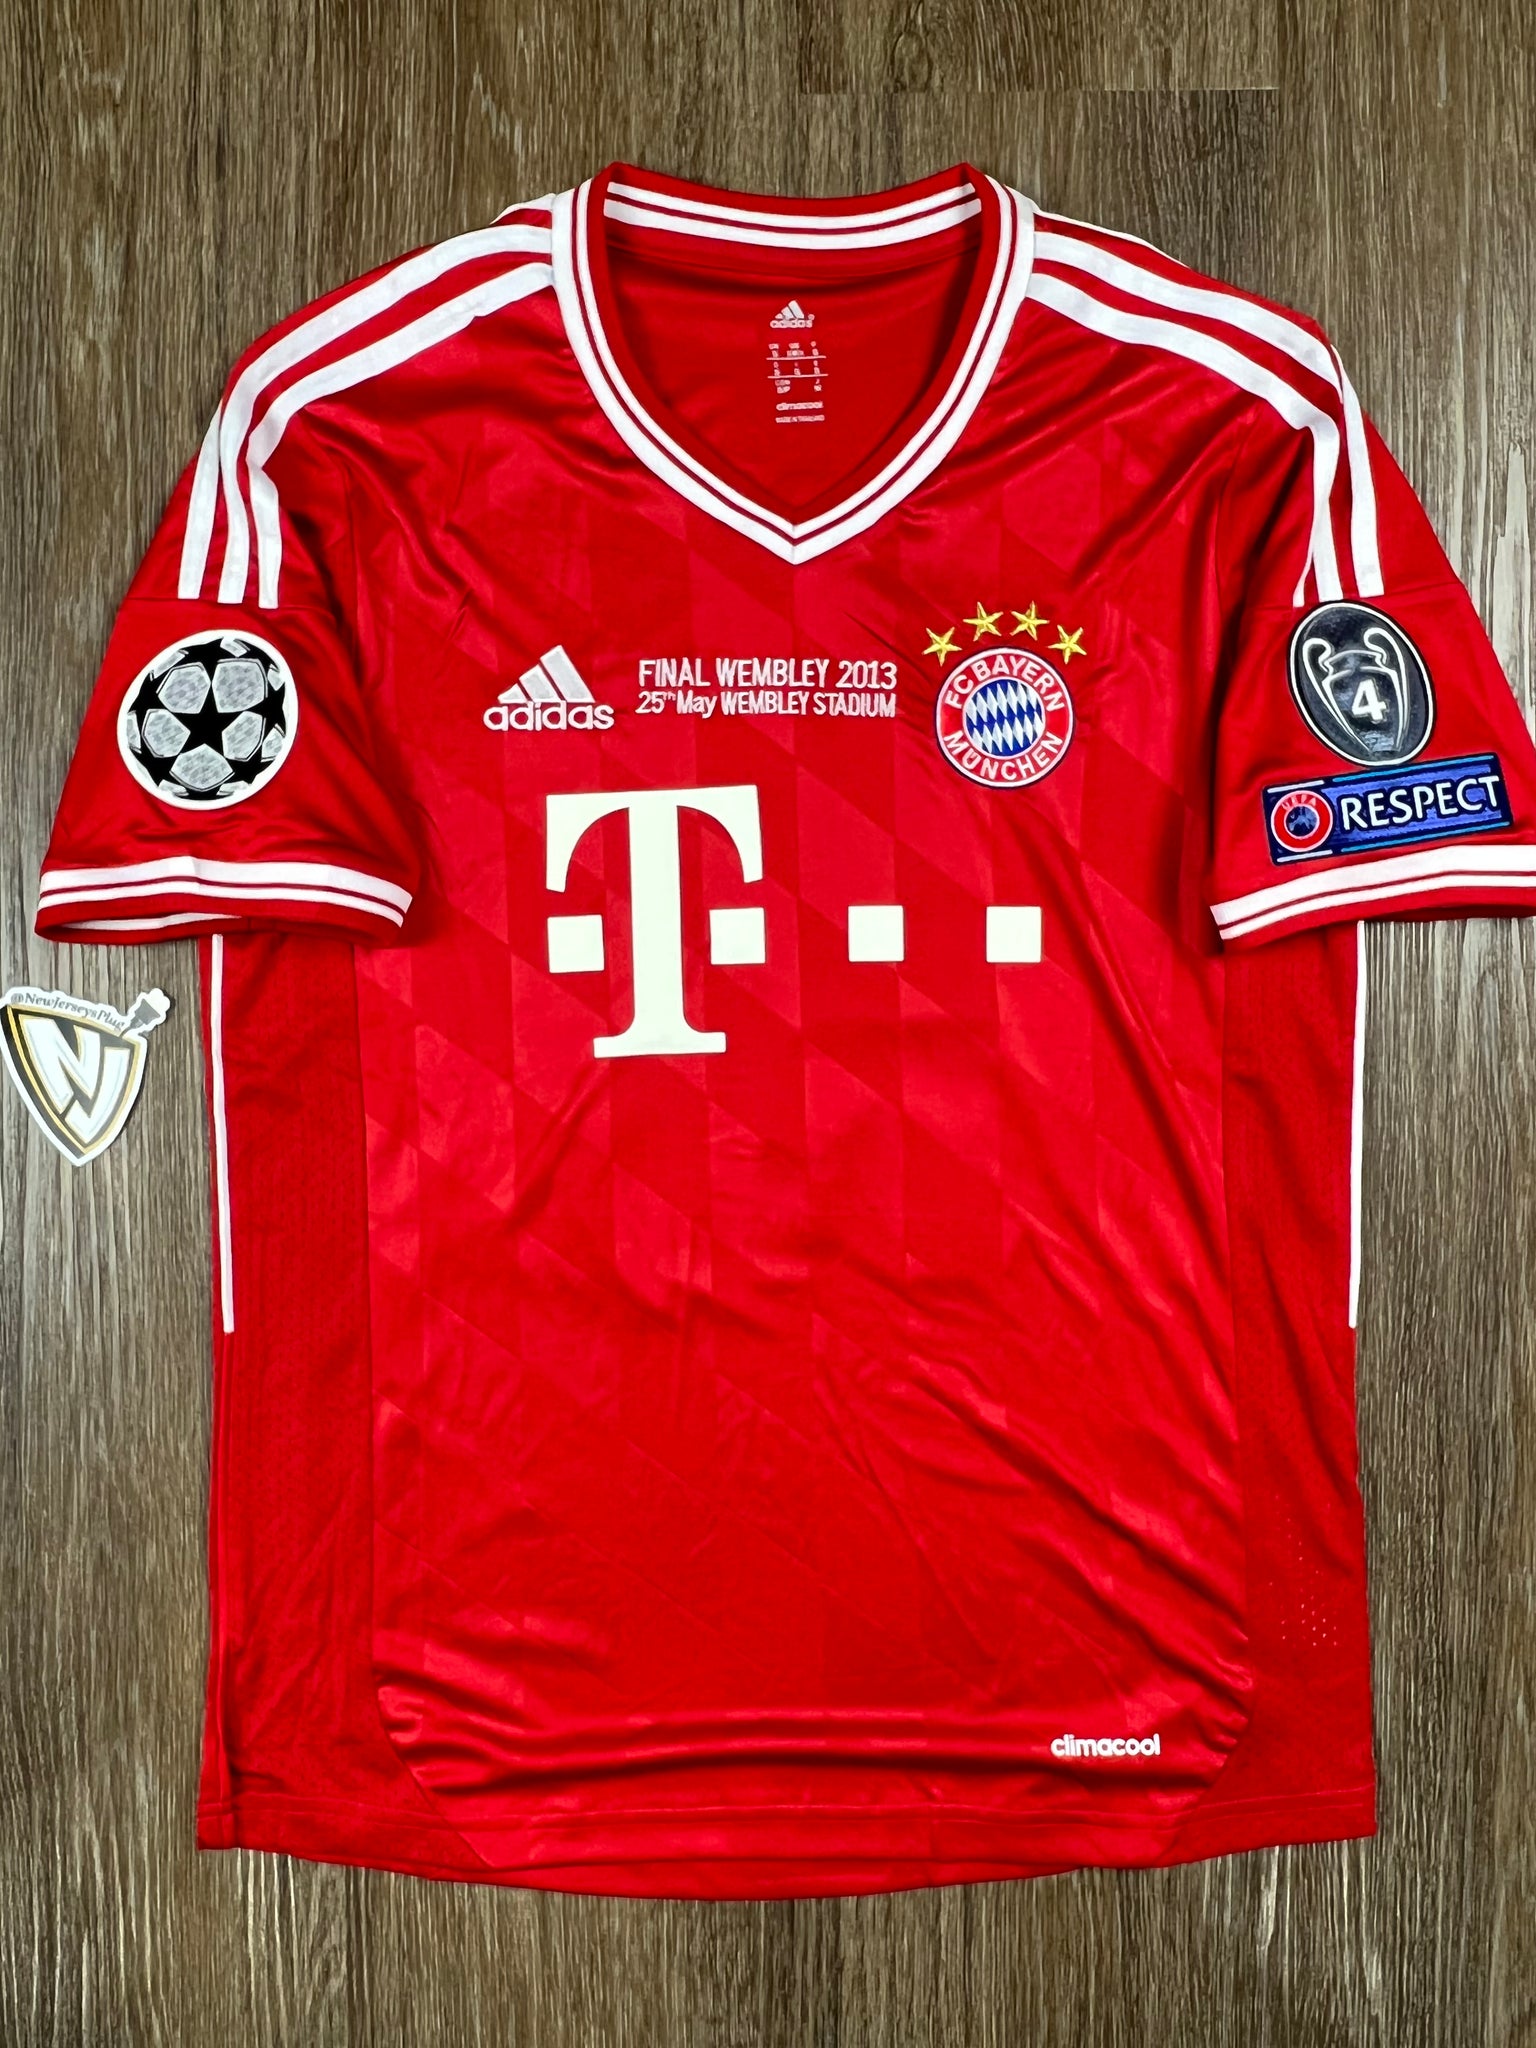 bayern munich jersey 2013